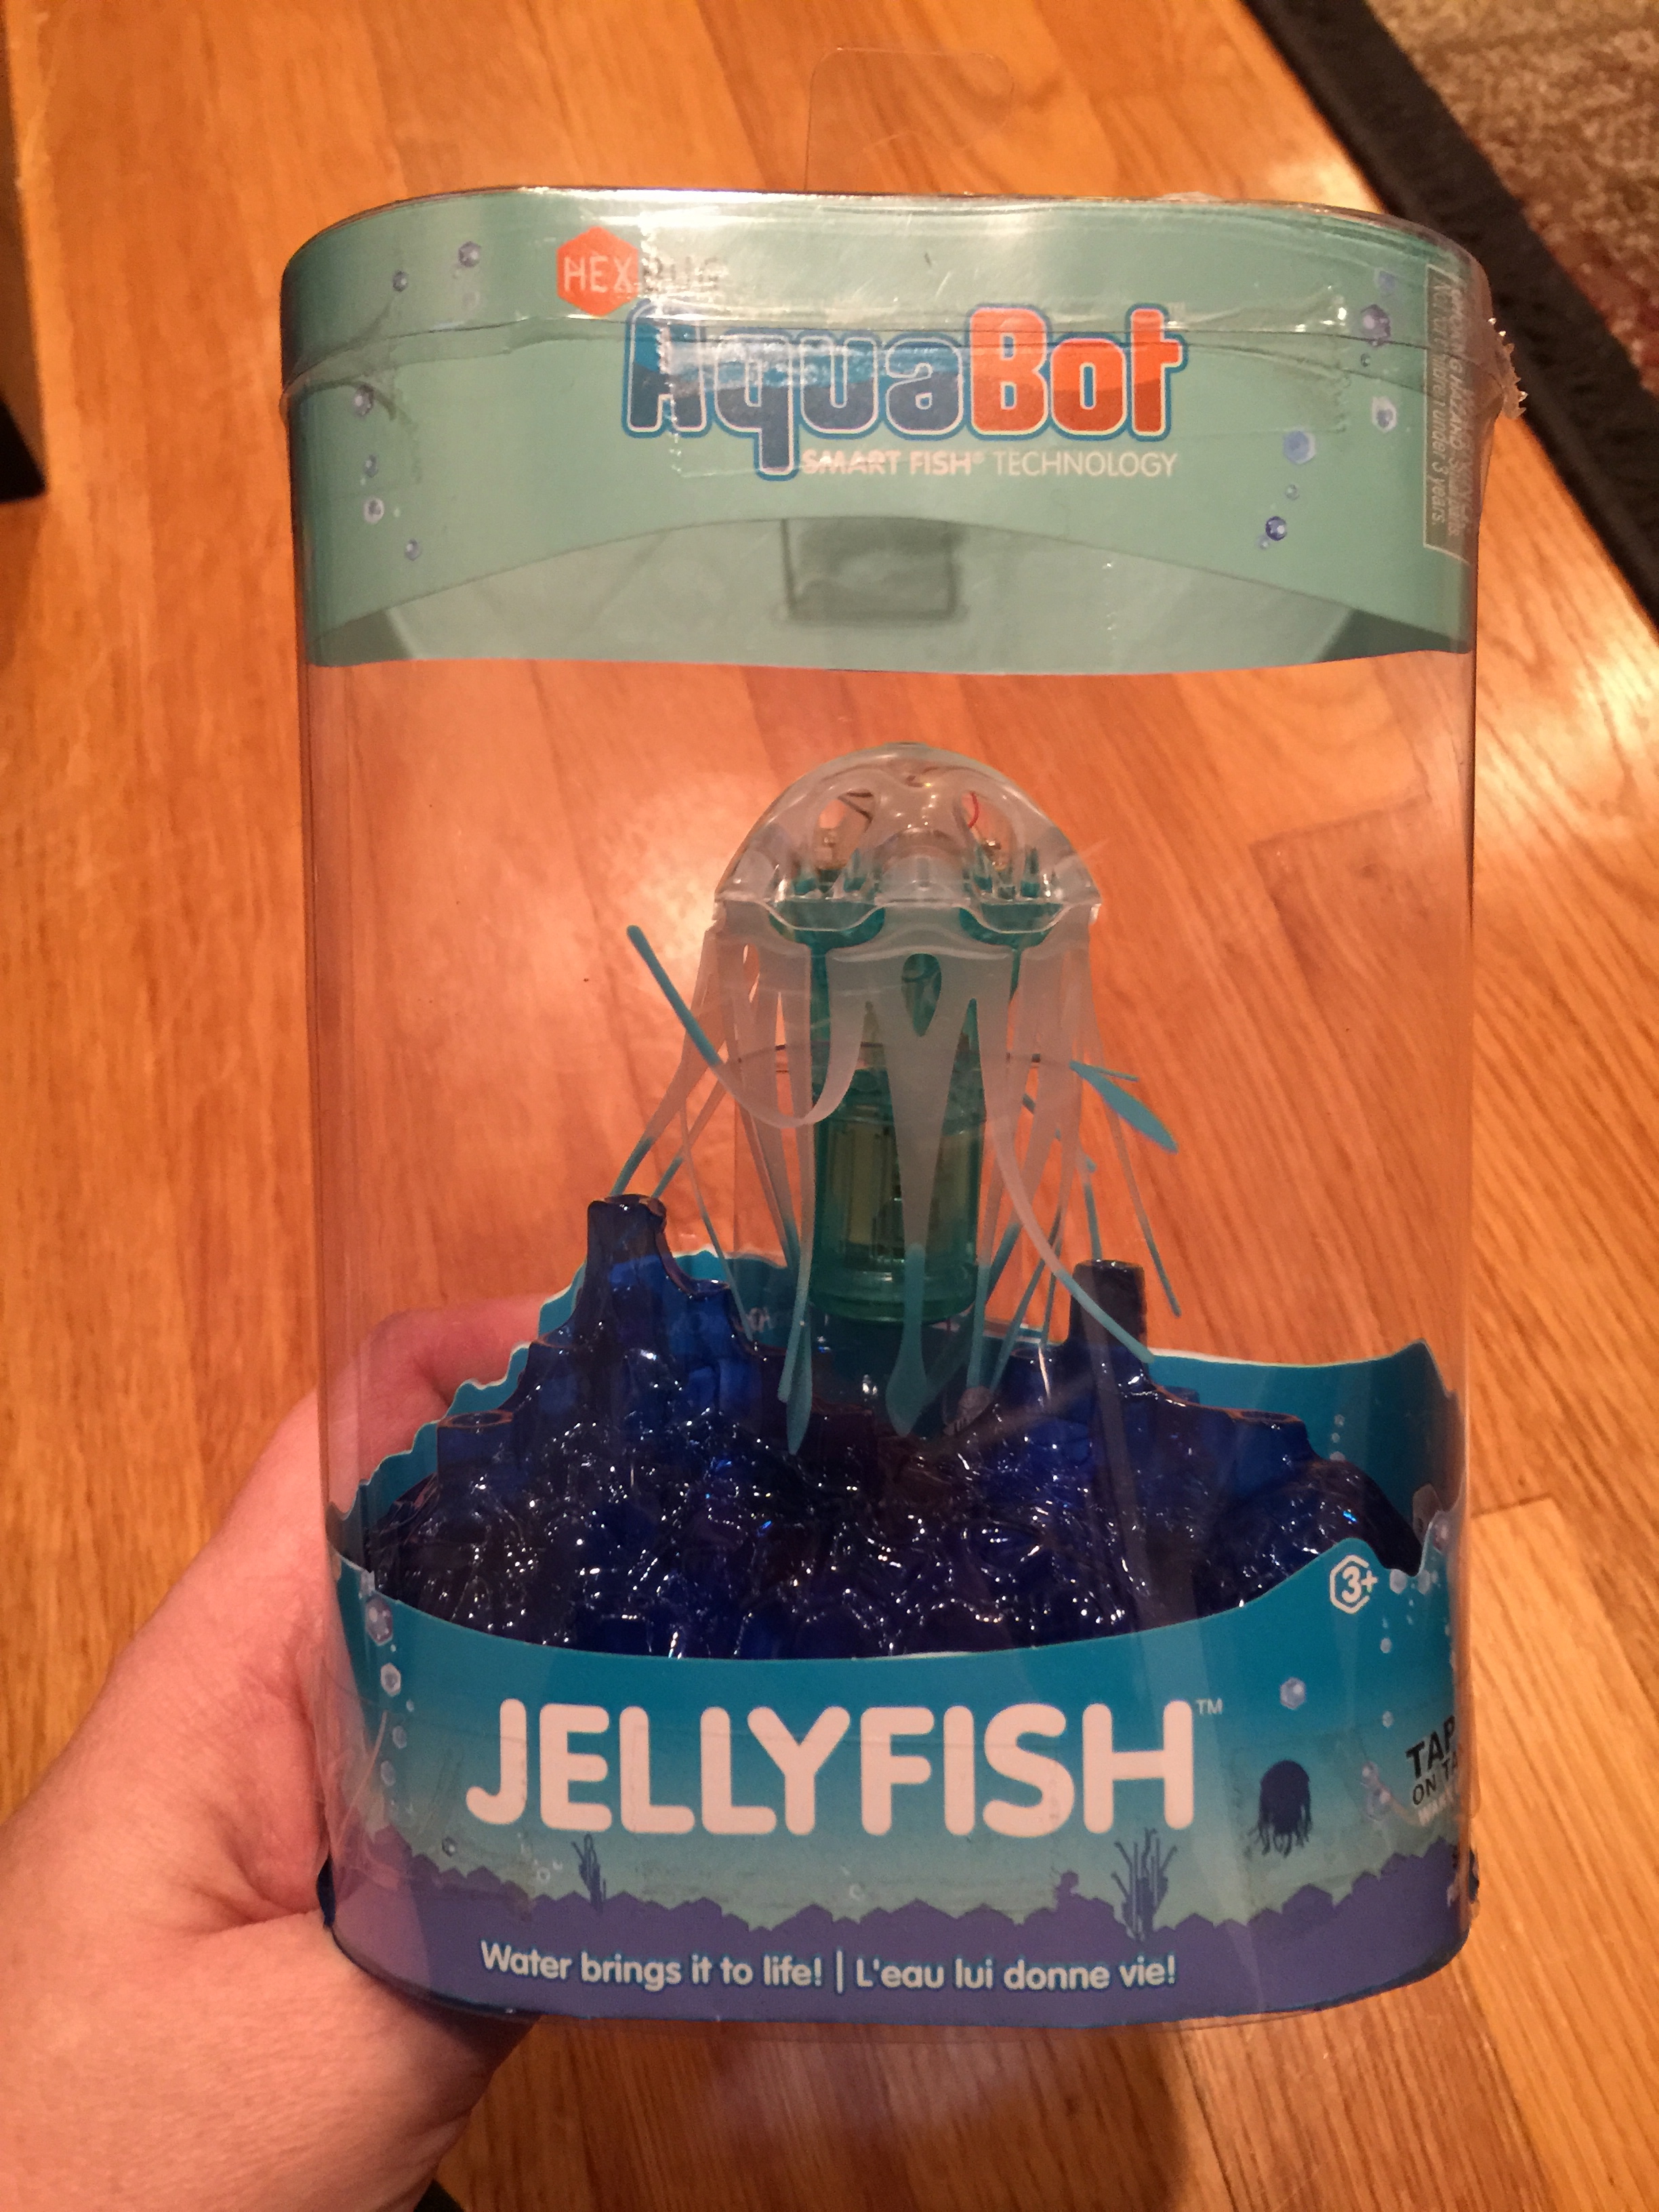 HEXBUG_Jellyfish